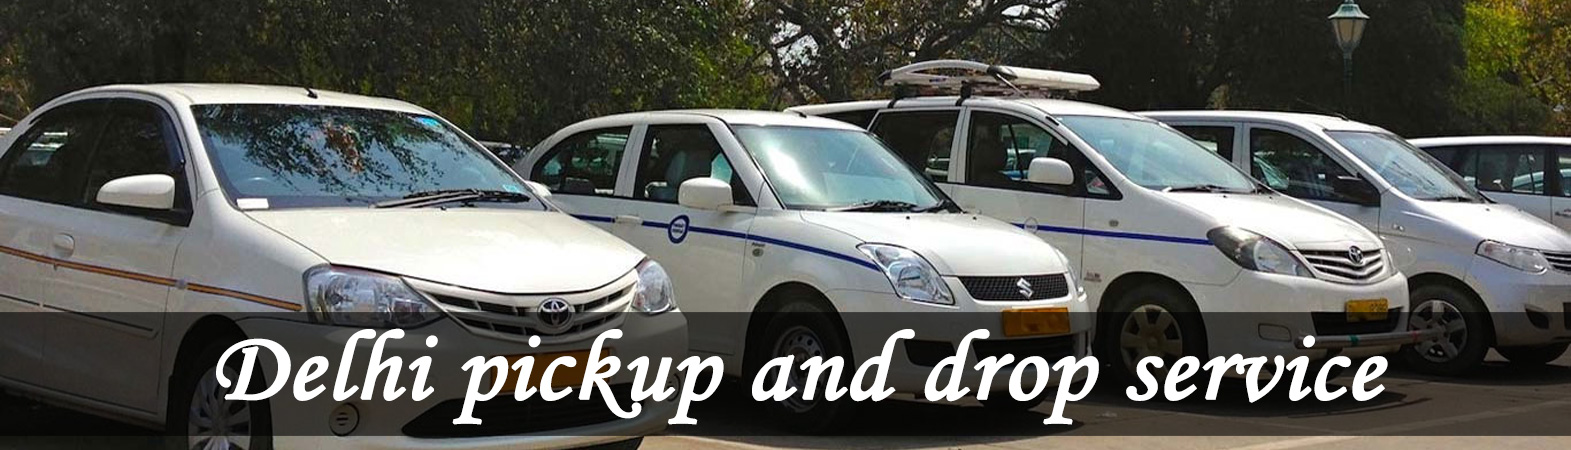 Delhi Pickup and drop service